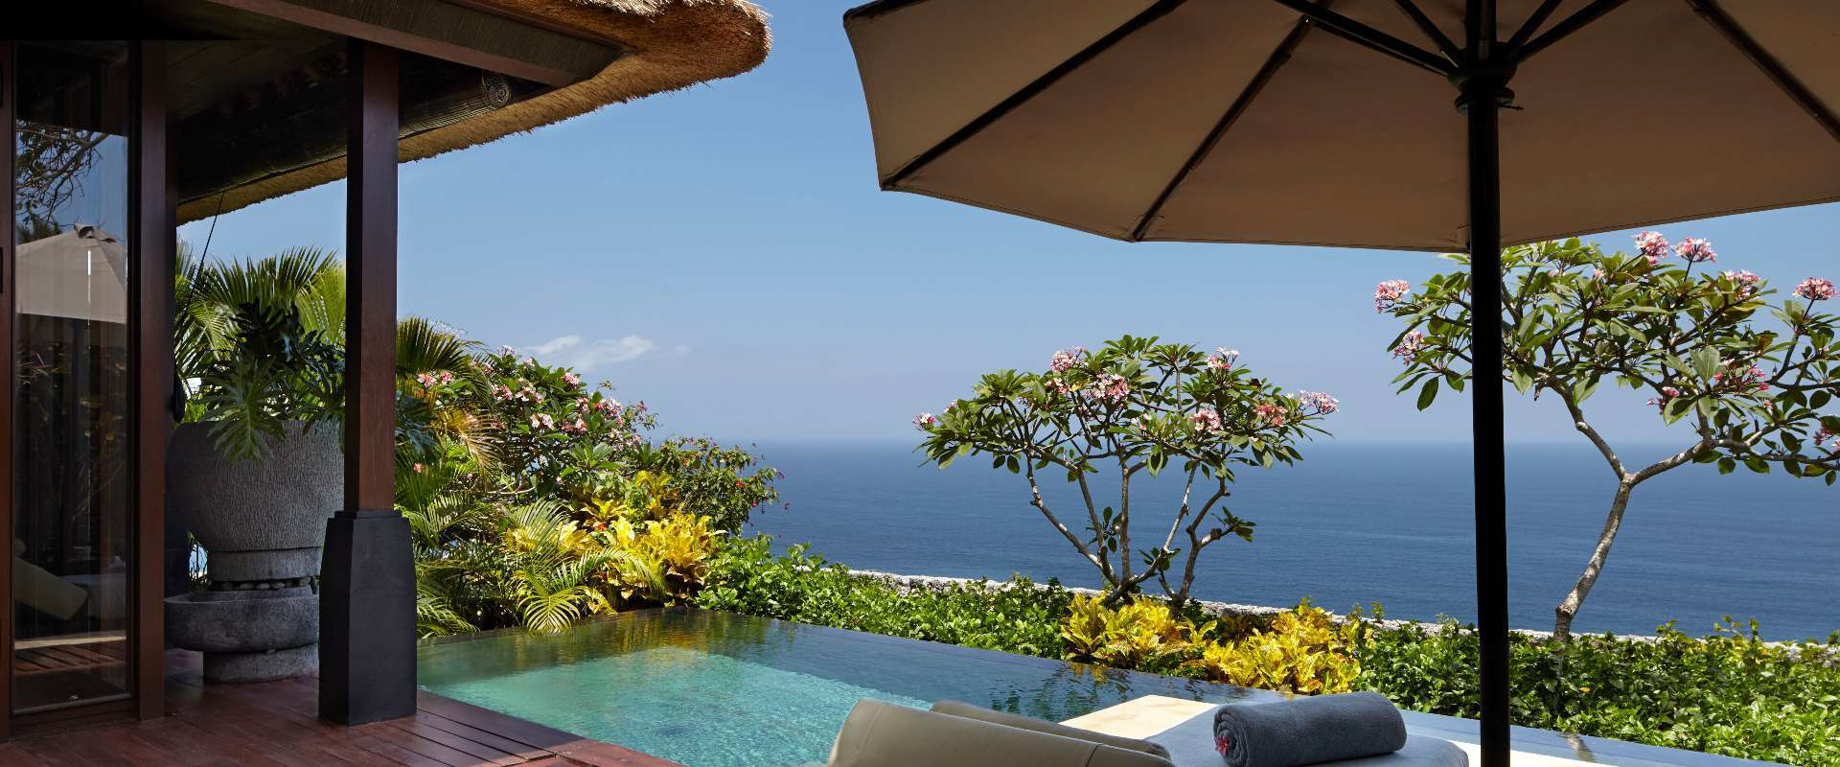 Bvlgari Resort Bali – Uluwatu, Bali, Indonesia – Ocean Cliff Villa Pool Deck Ocean View